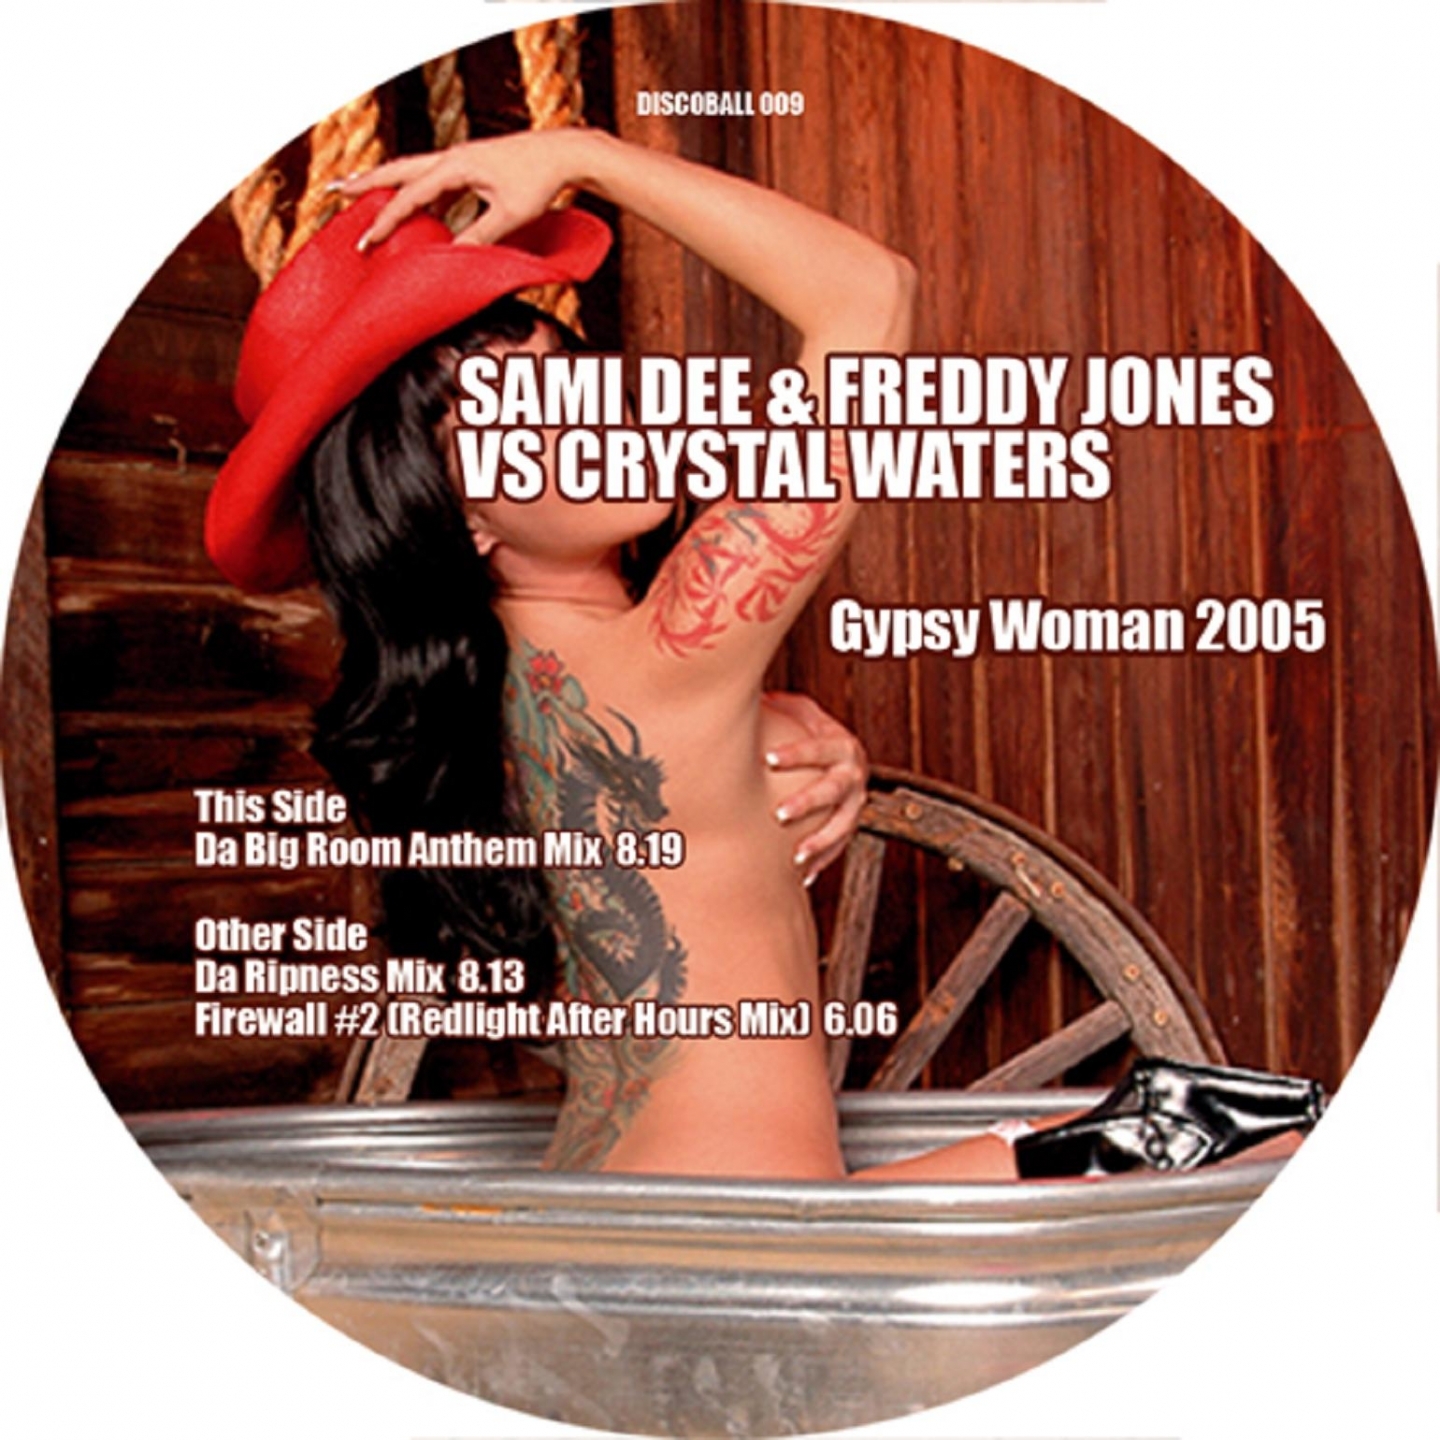 Gypsy Woman 2006 (La-Da-Dee) (Matthias Menck's Tribute Remix)